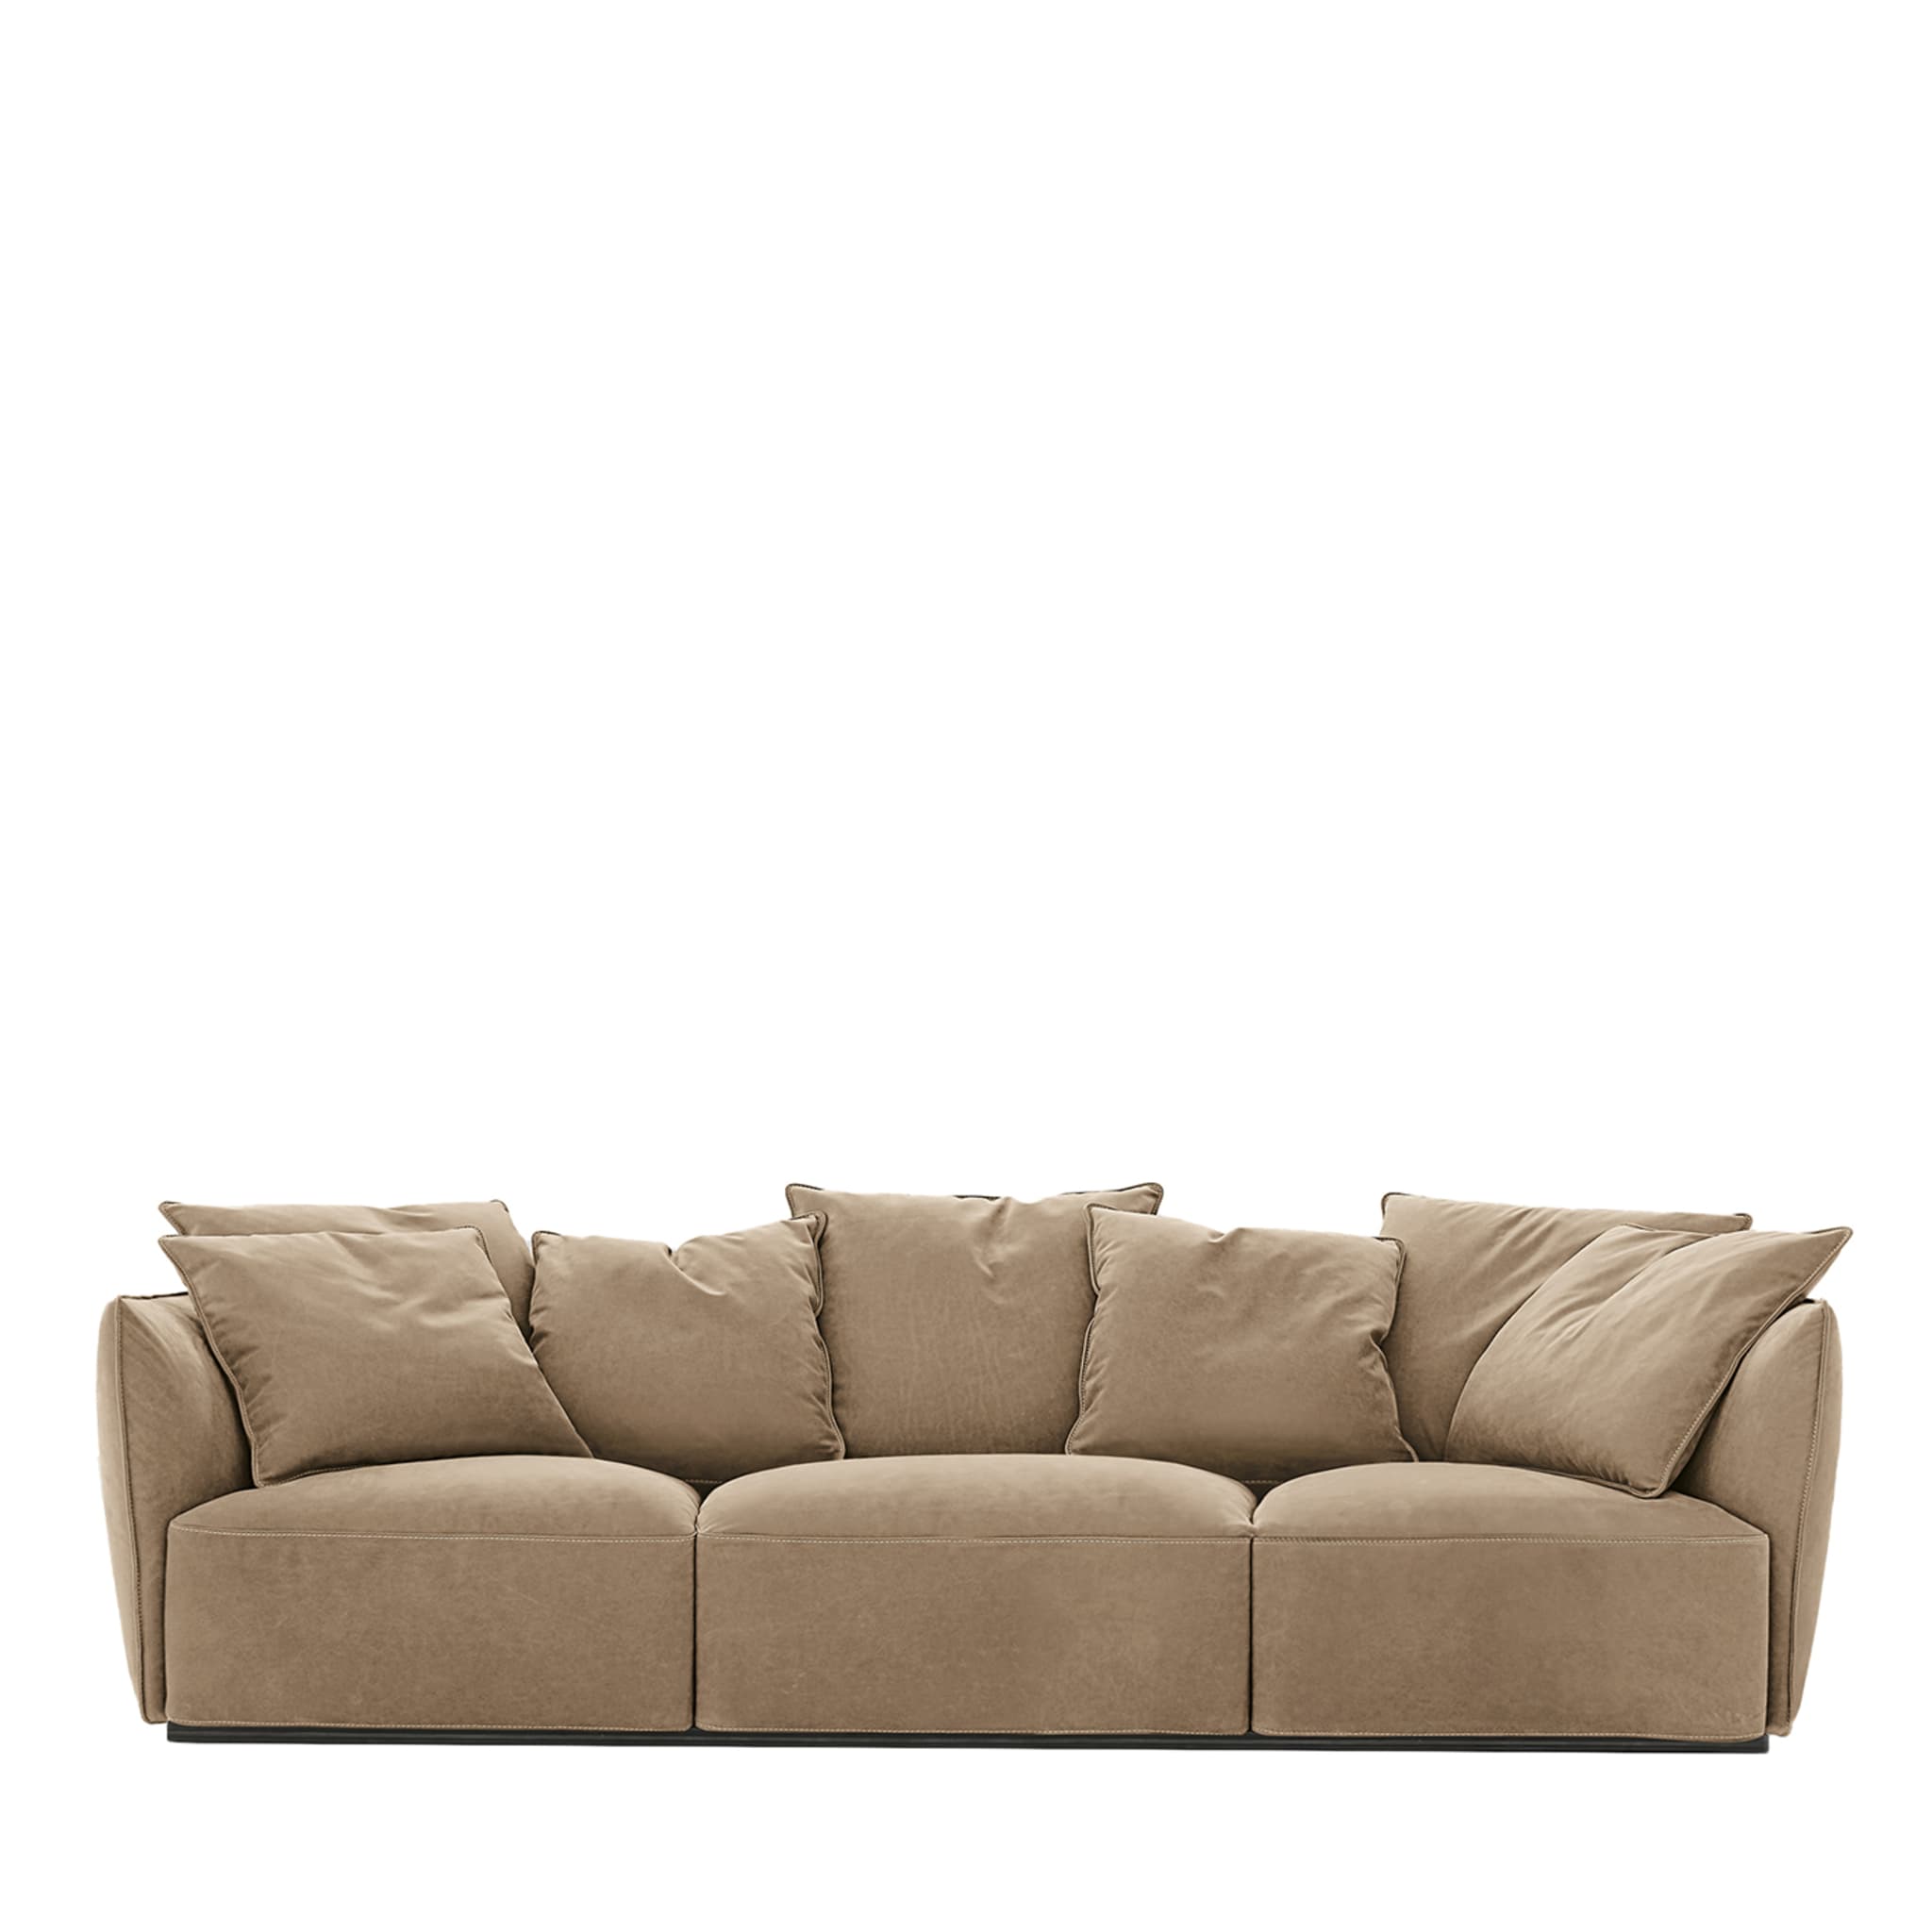 Sofa aufblasen - Hauptansicht